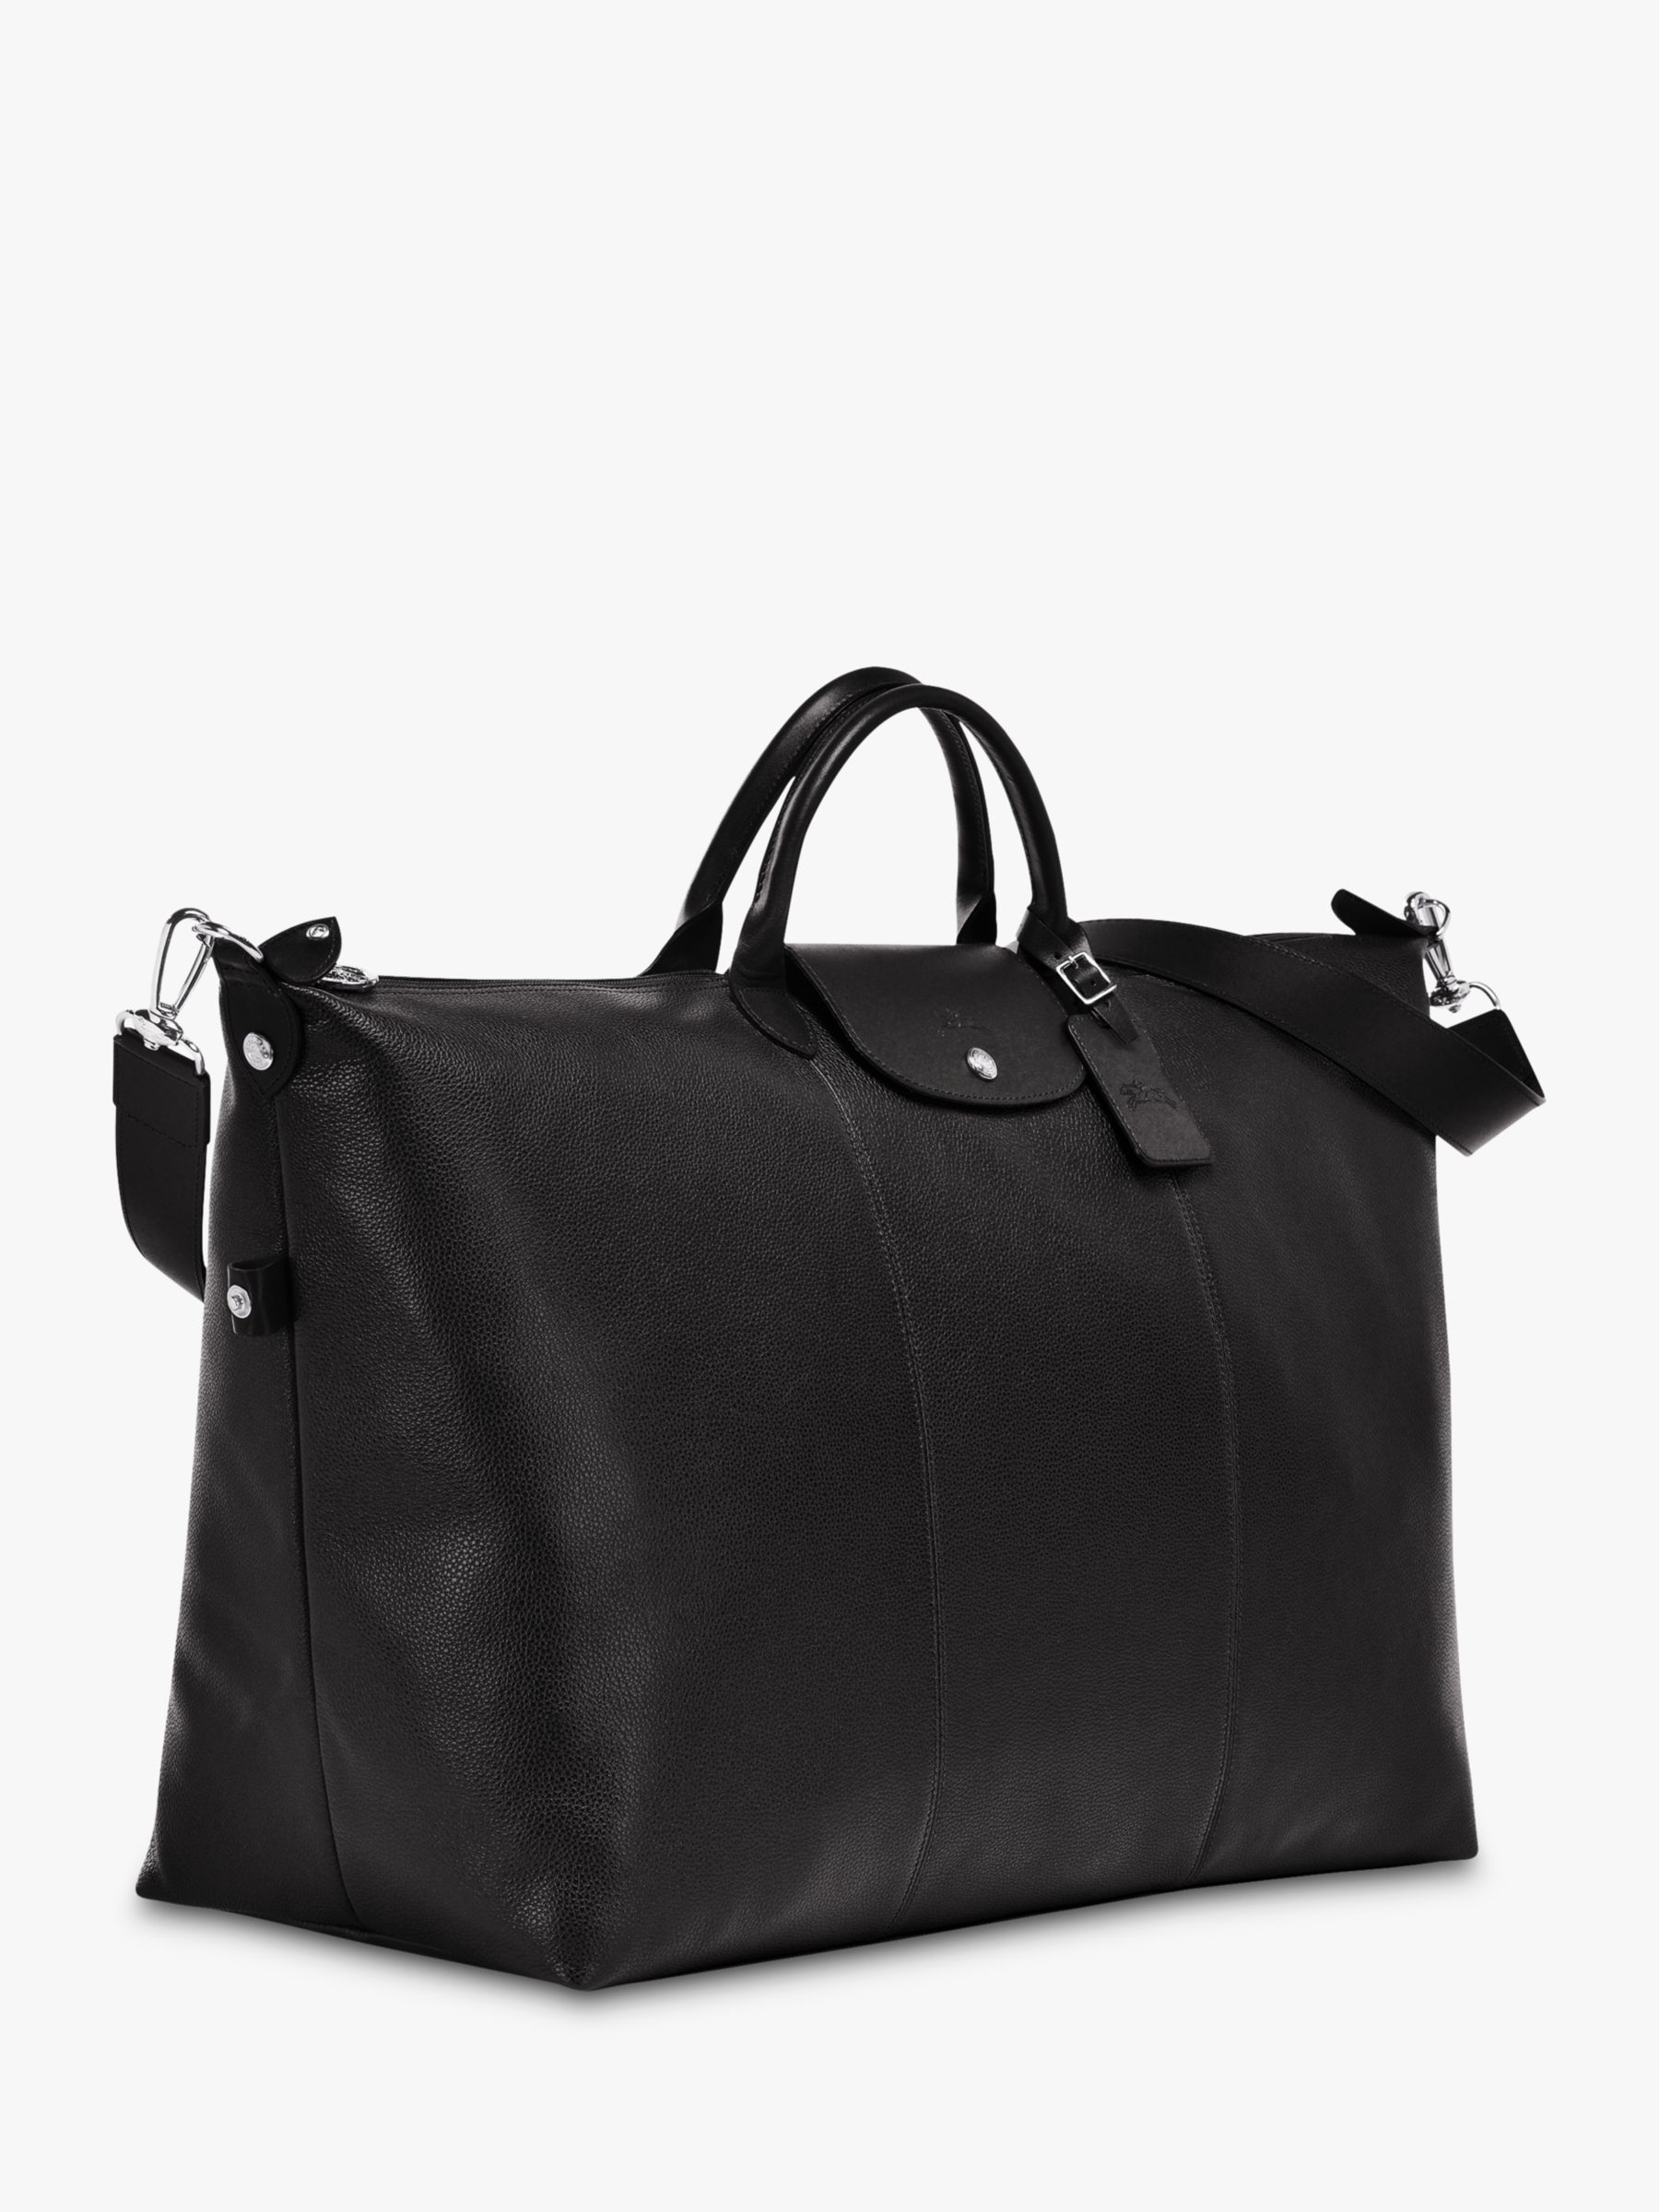 Longchamp Le Foulonné Leather Travel Bag, Black at John Lewis & Partners